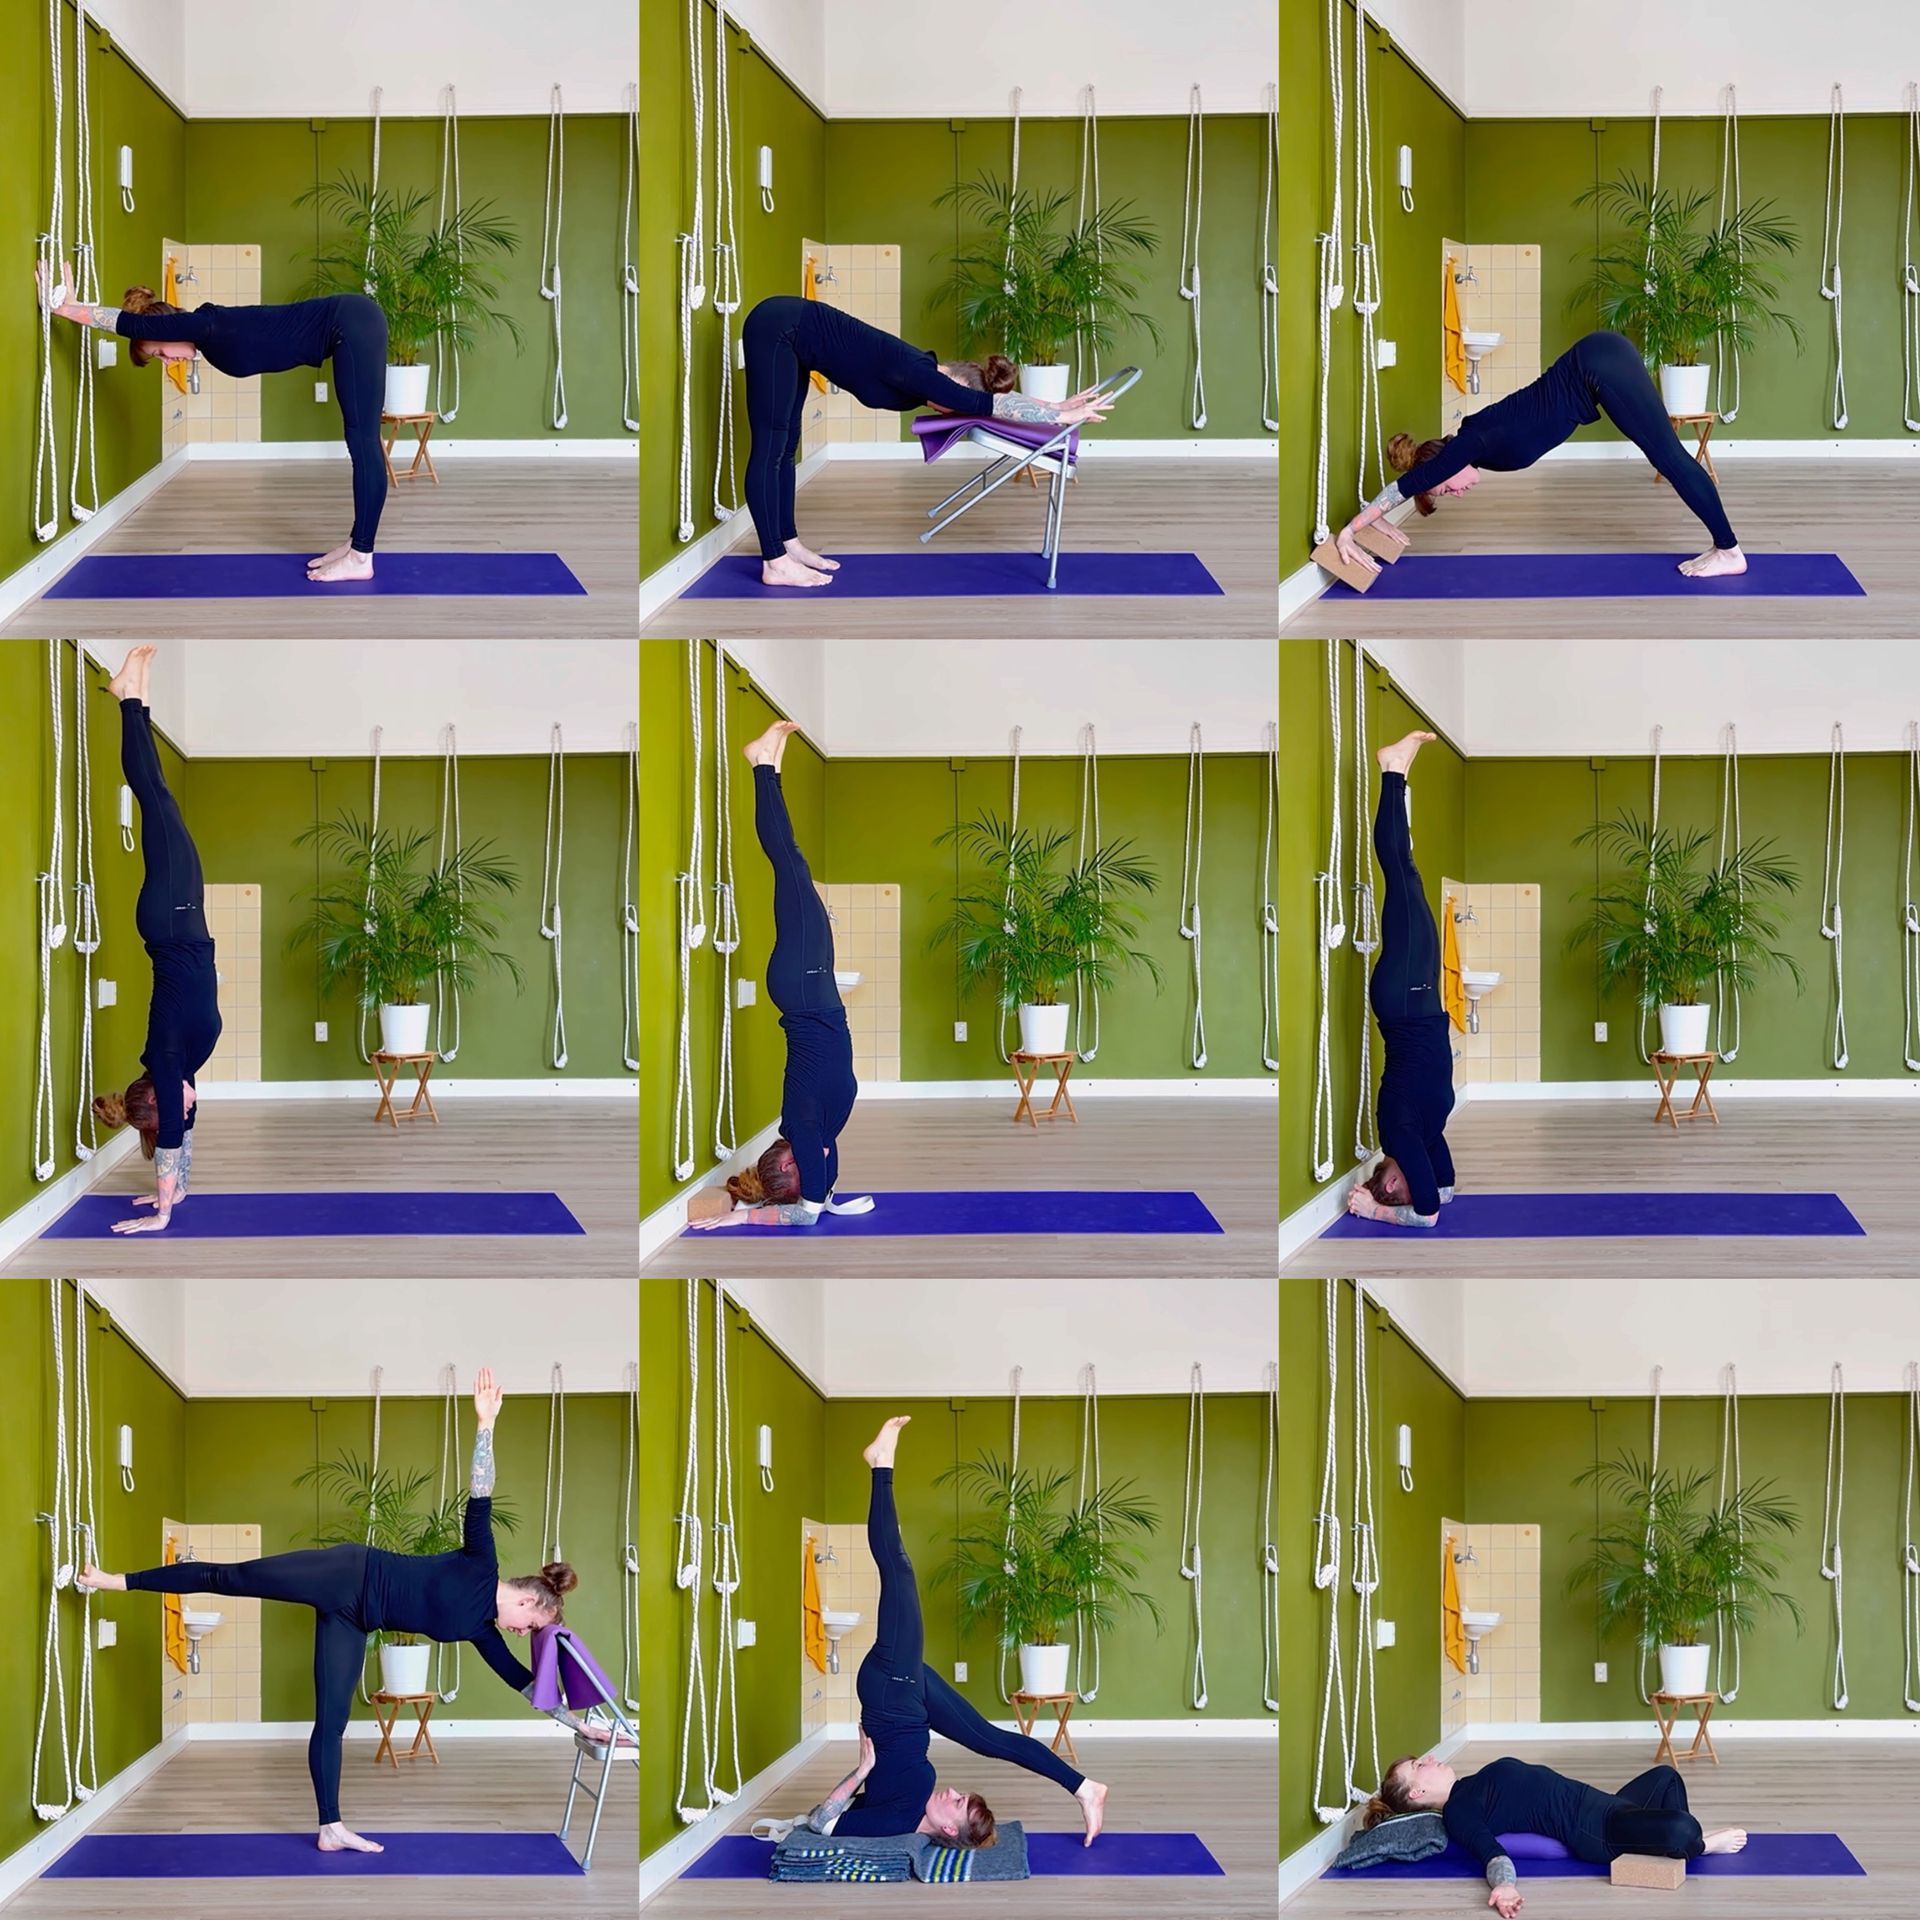 9 Balanshoudingen met yoga hulpmiddelen.